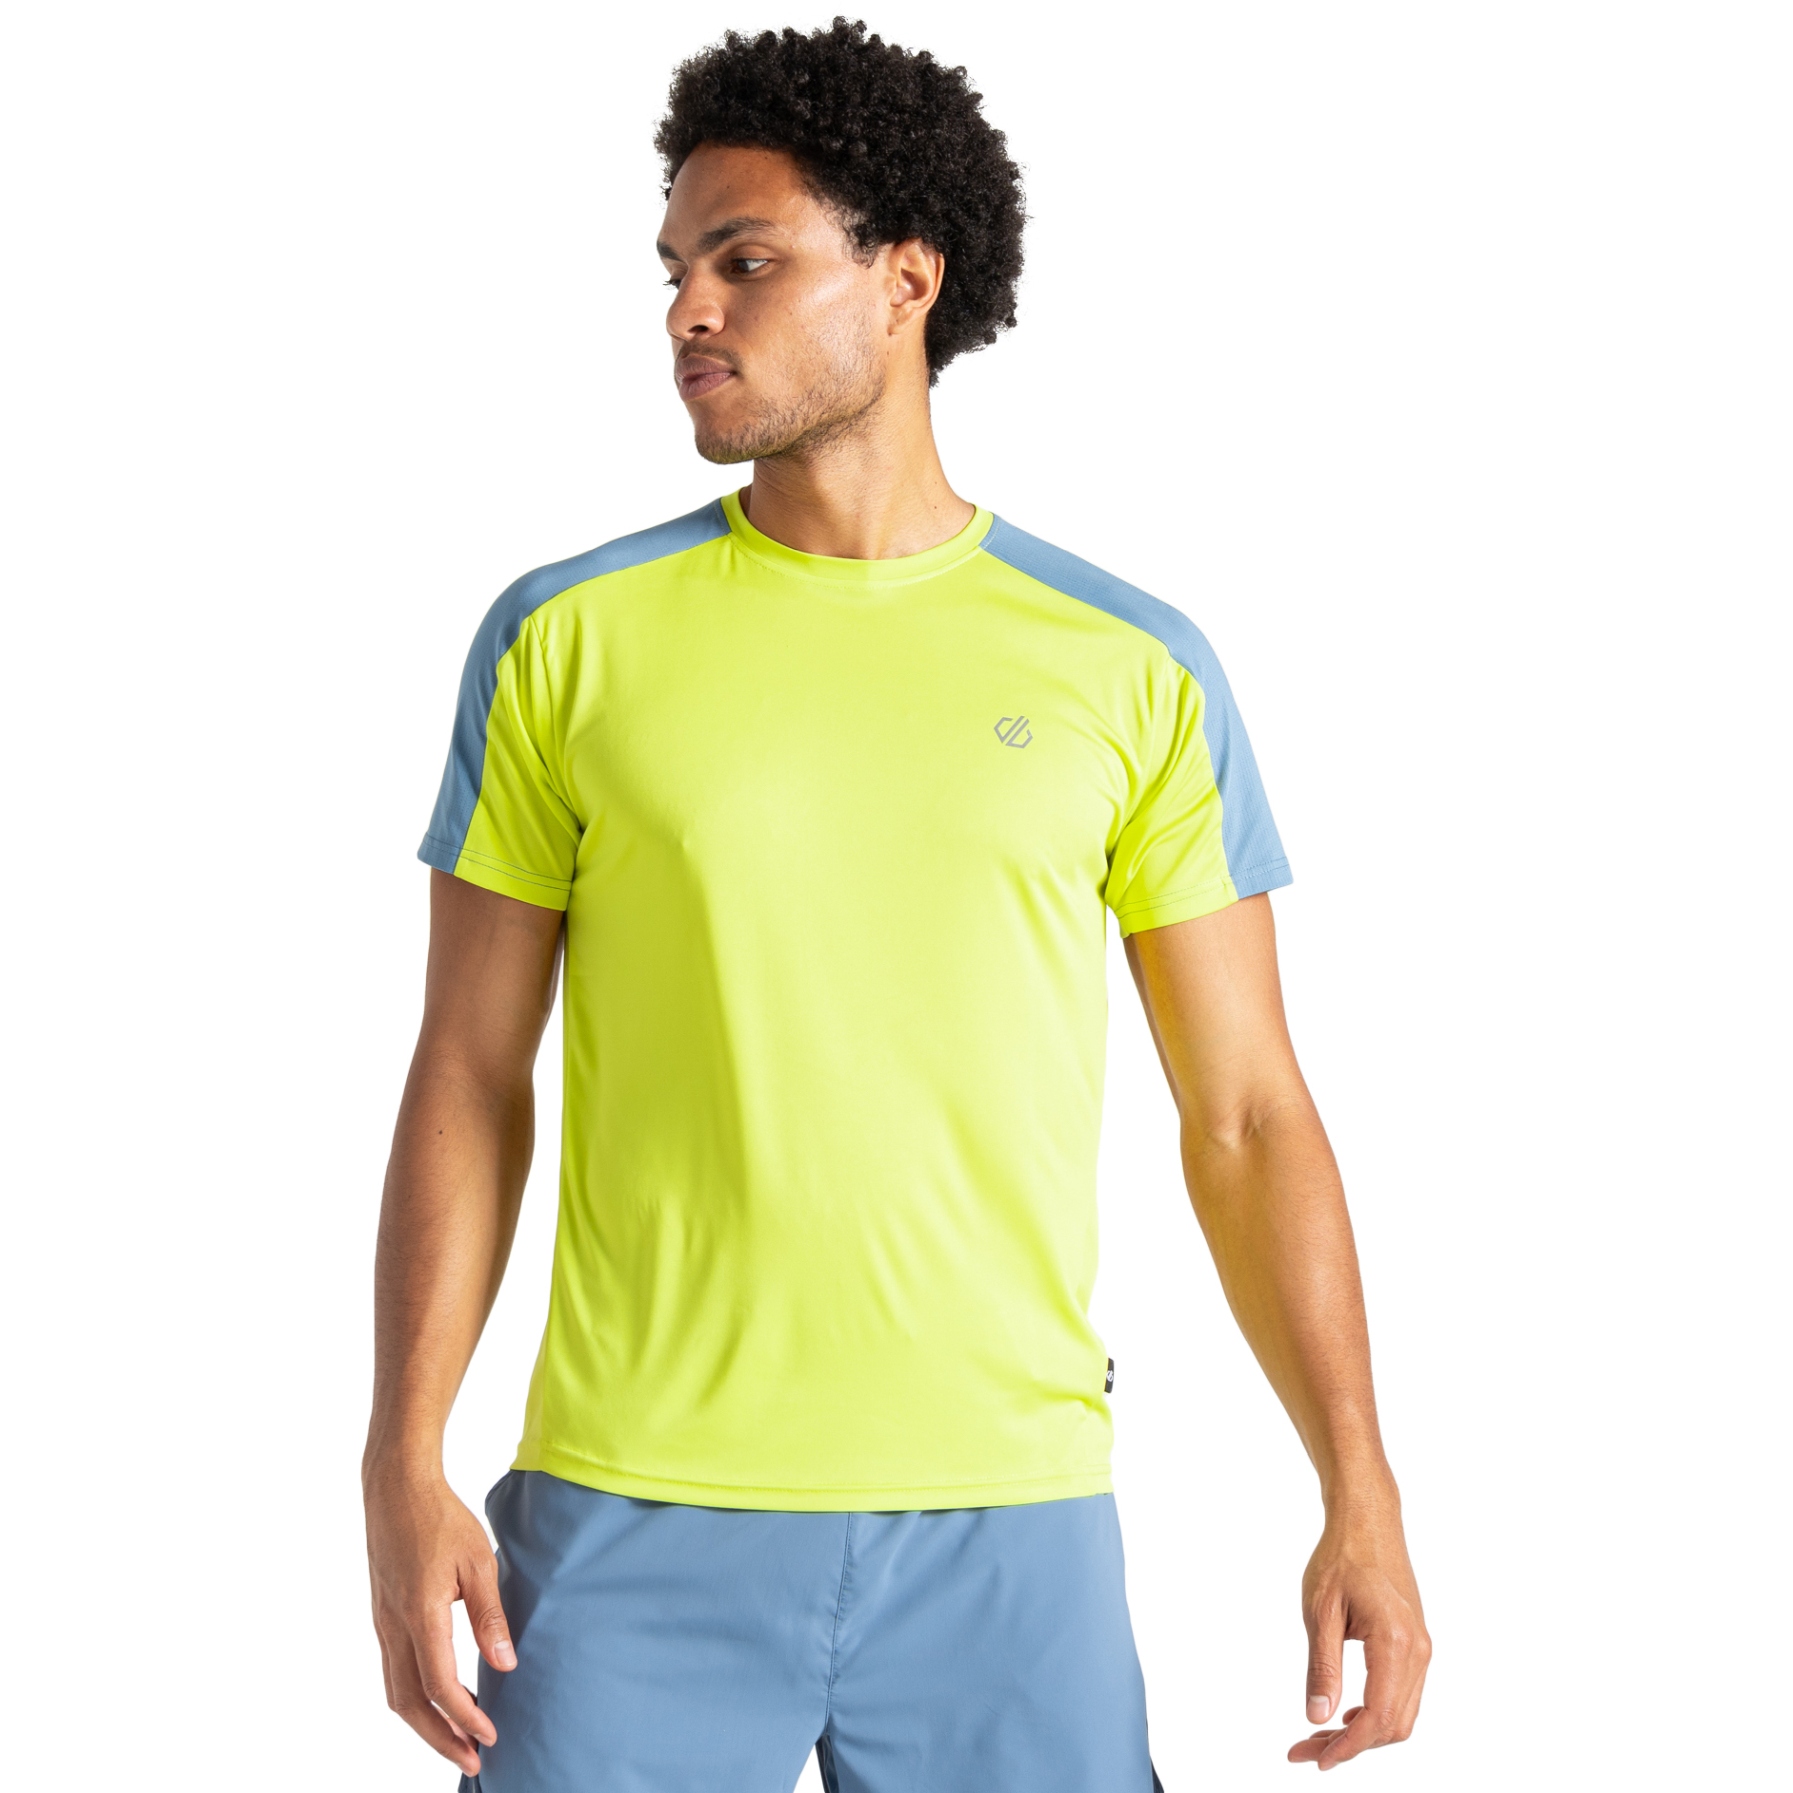 Produktbild von Dare 2b Discernible II T-Shirt Herren - N5W Neon Spring/Coronet Blue